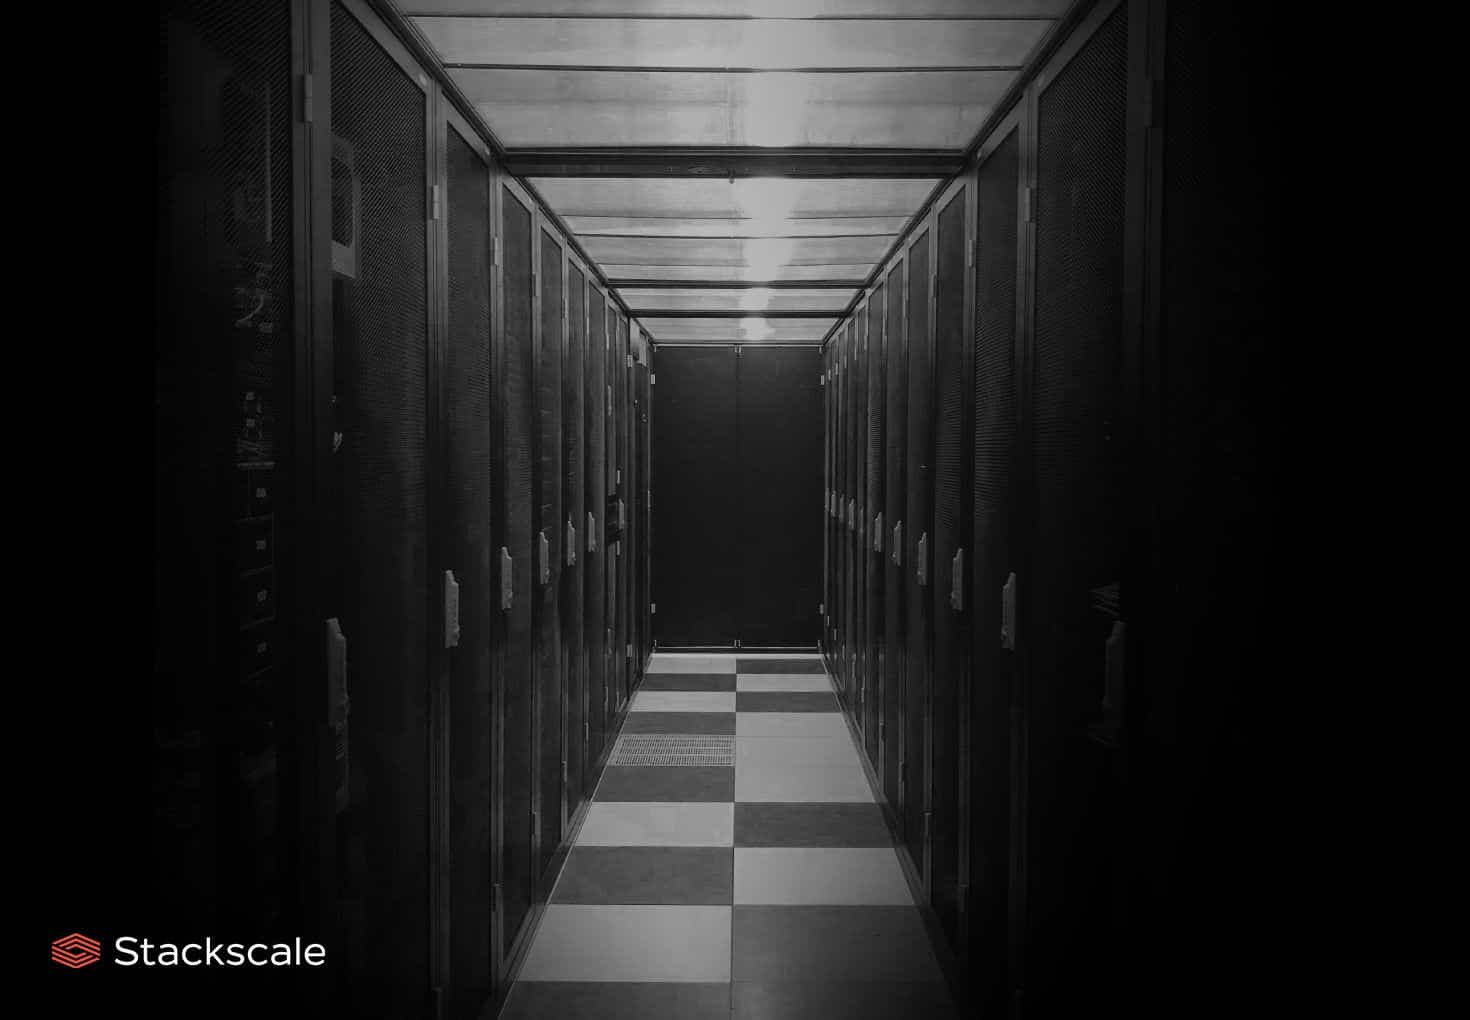 Stackscale abre nuevos data centers en Madrid y Ámsterdam para expandir su infraestructura, bare-metal y cloud privado